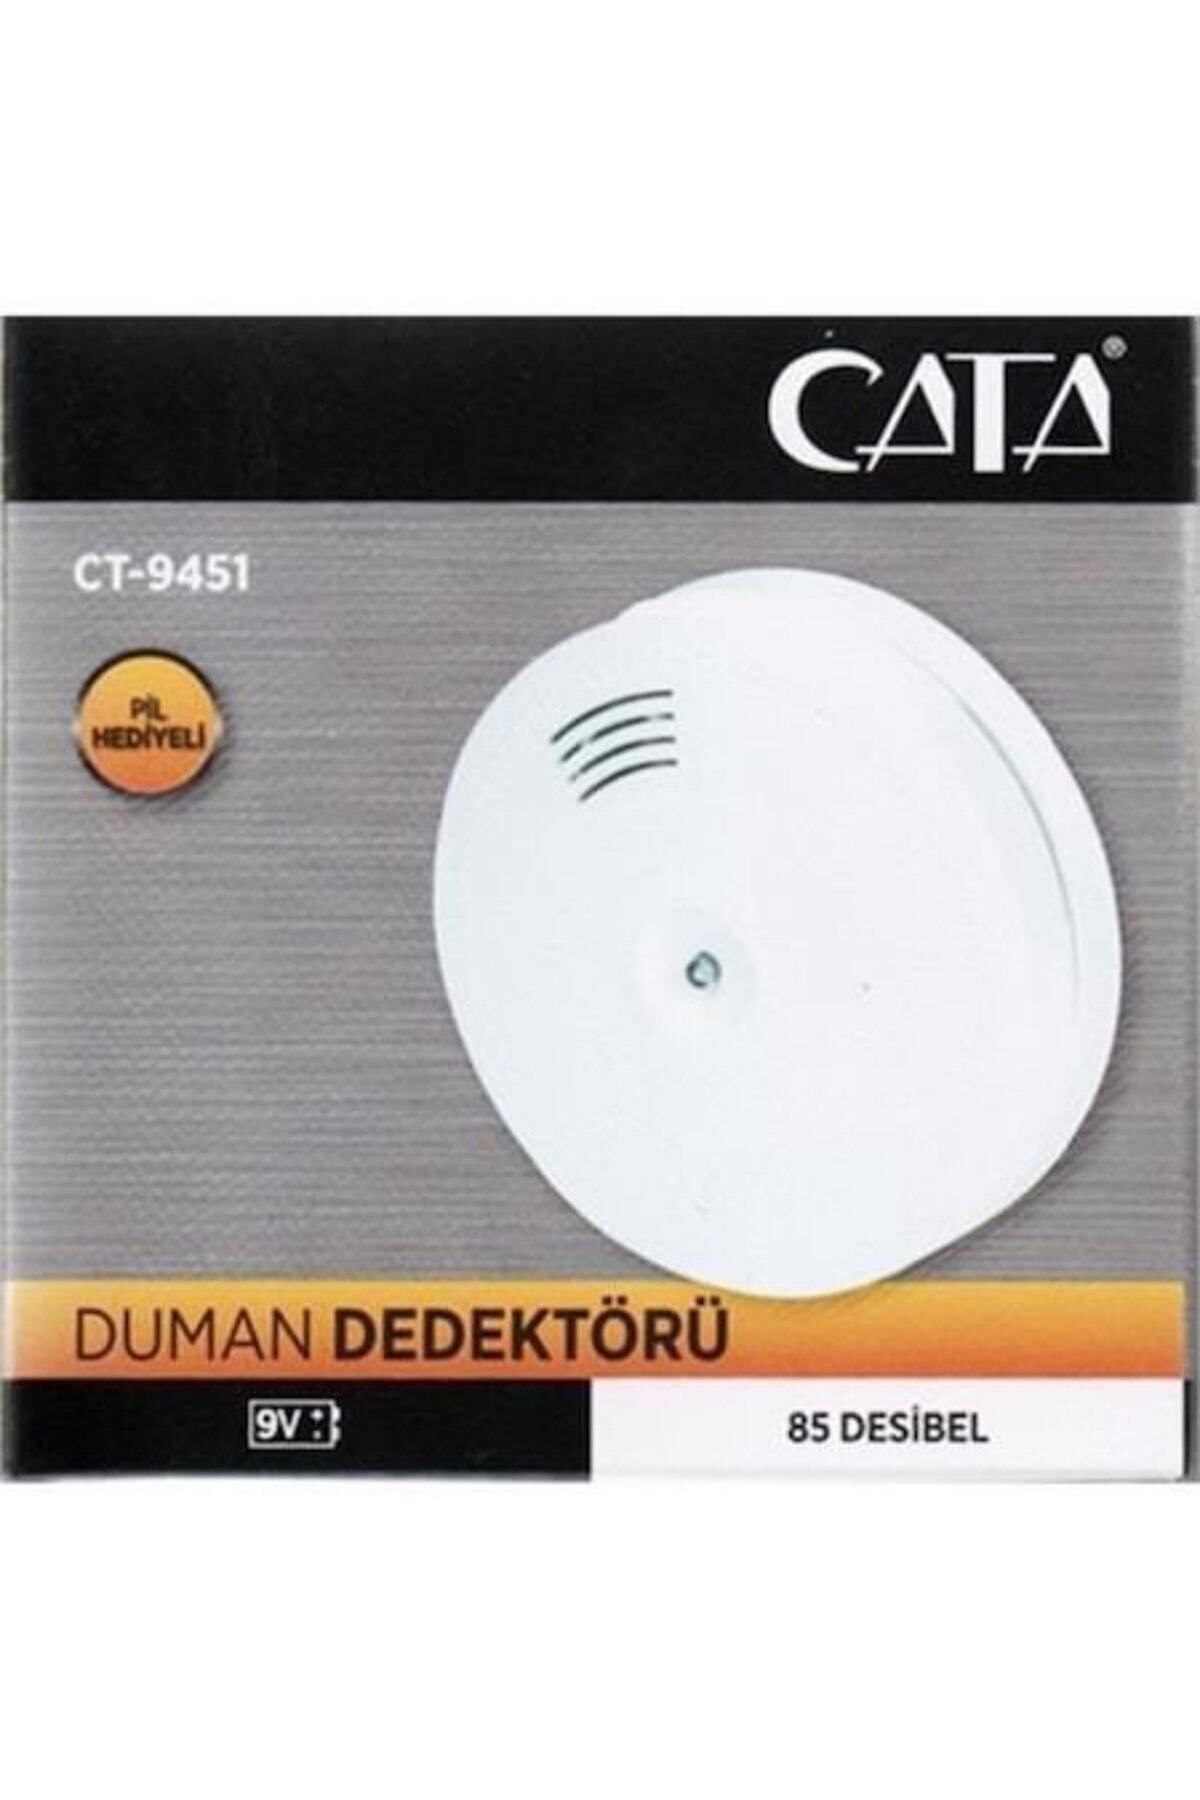 Cata Ct-9451 Duman Dedektörü Pilli